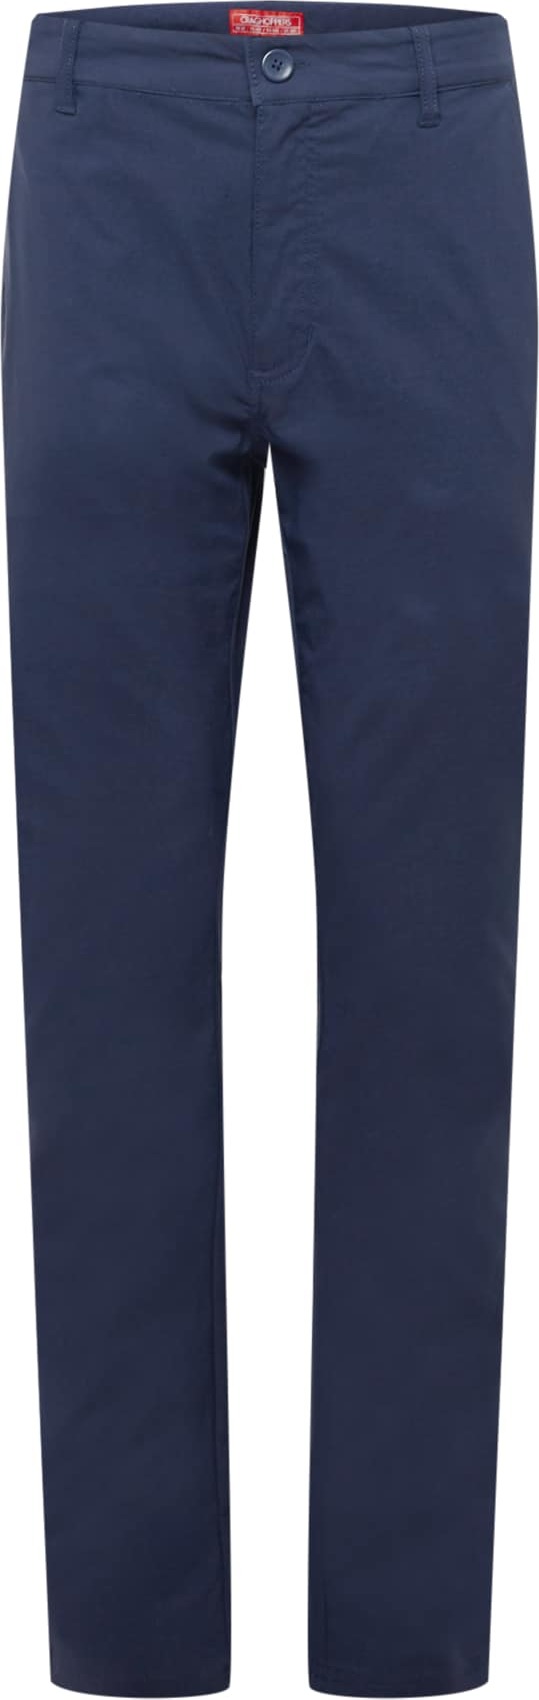 CRAGHOPPERS Outdoorové kalhoty 'Nosilife Santos' námořnická modř